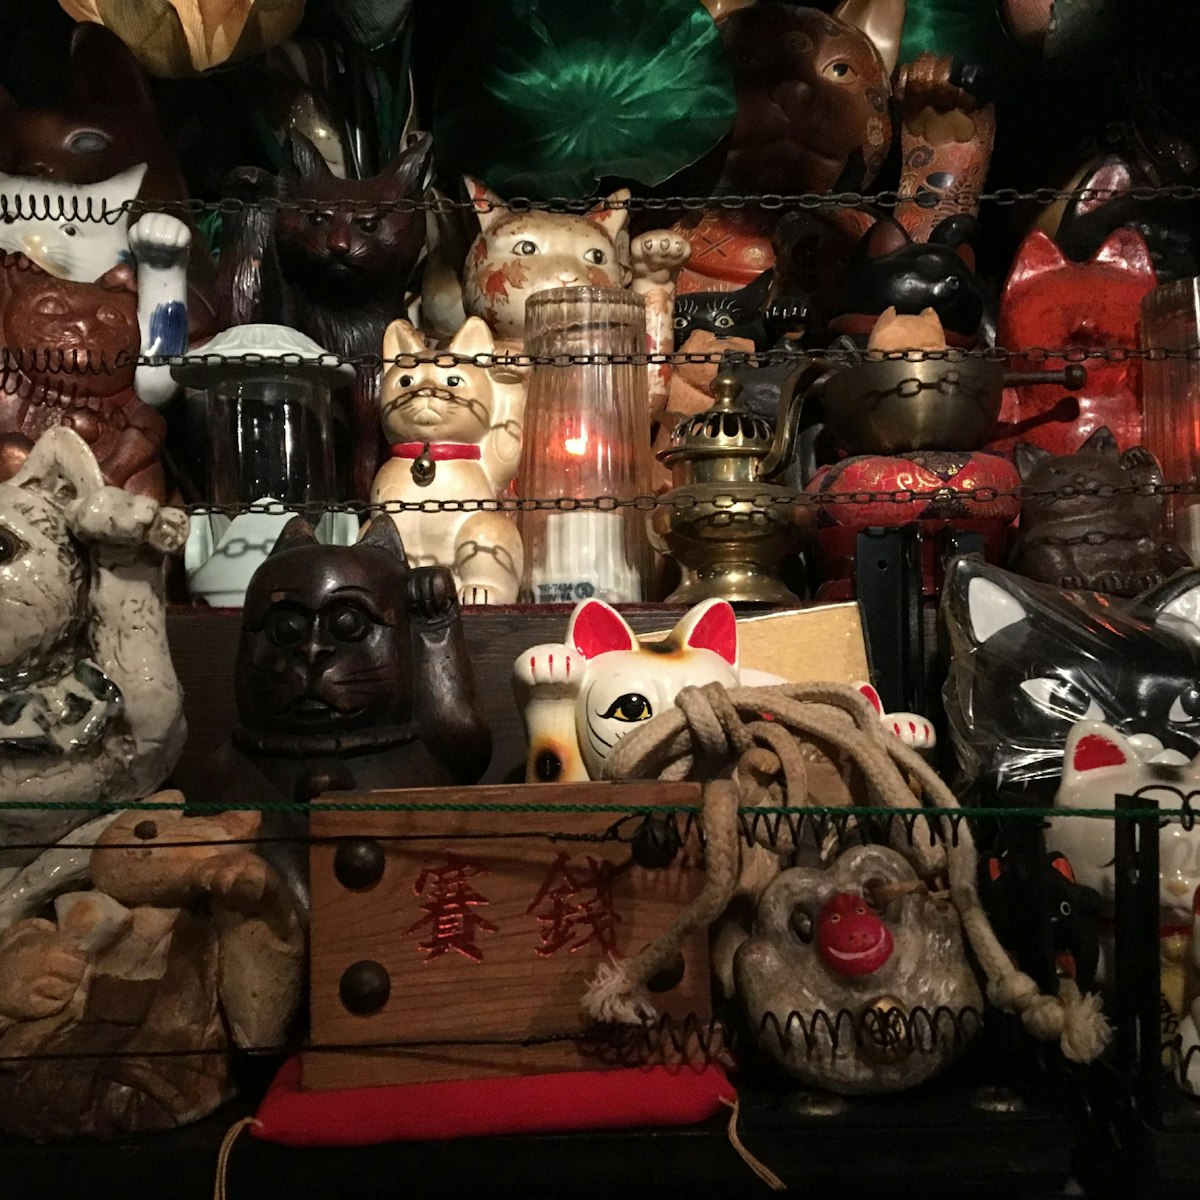 Display of manekineko (beckoning cats) at jazz bar Samurai, Shinjuku & Northwest Tokyo.